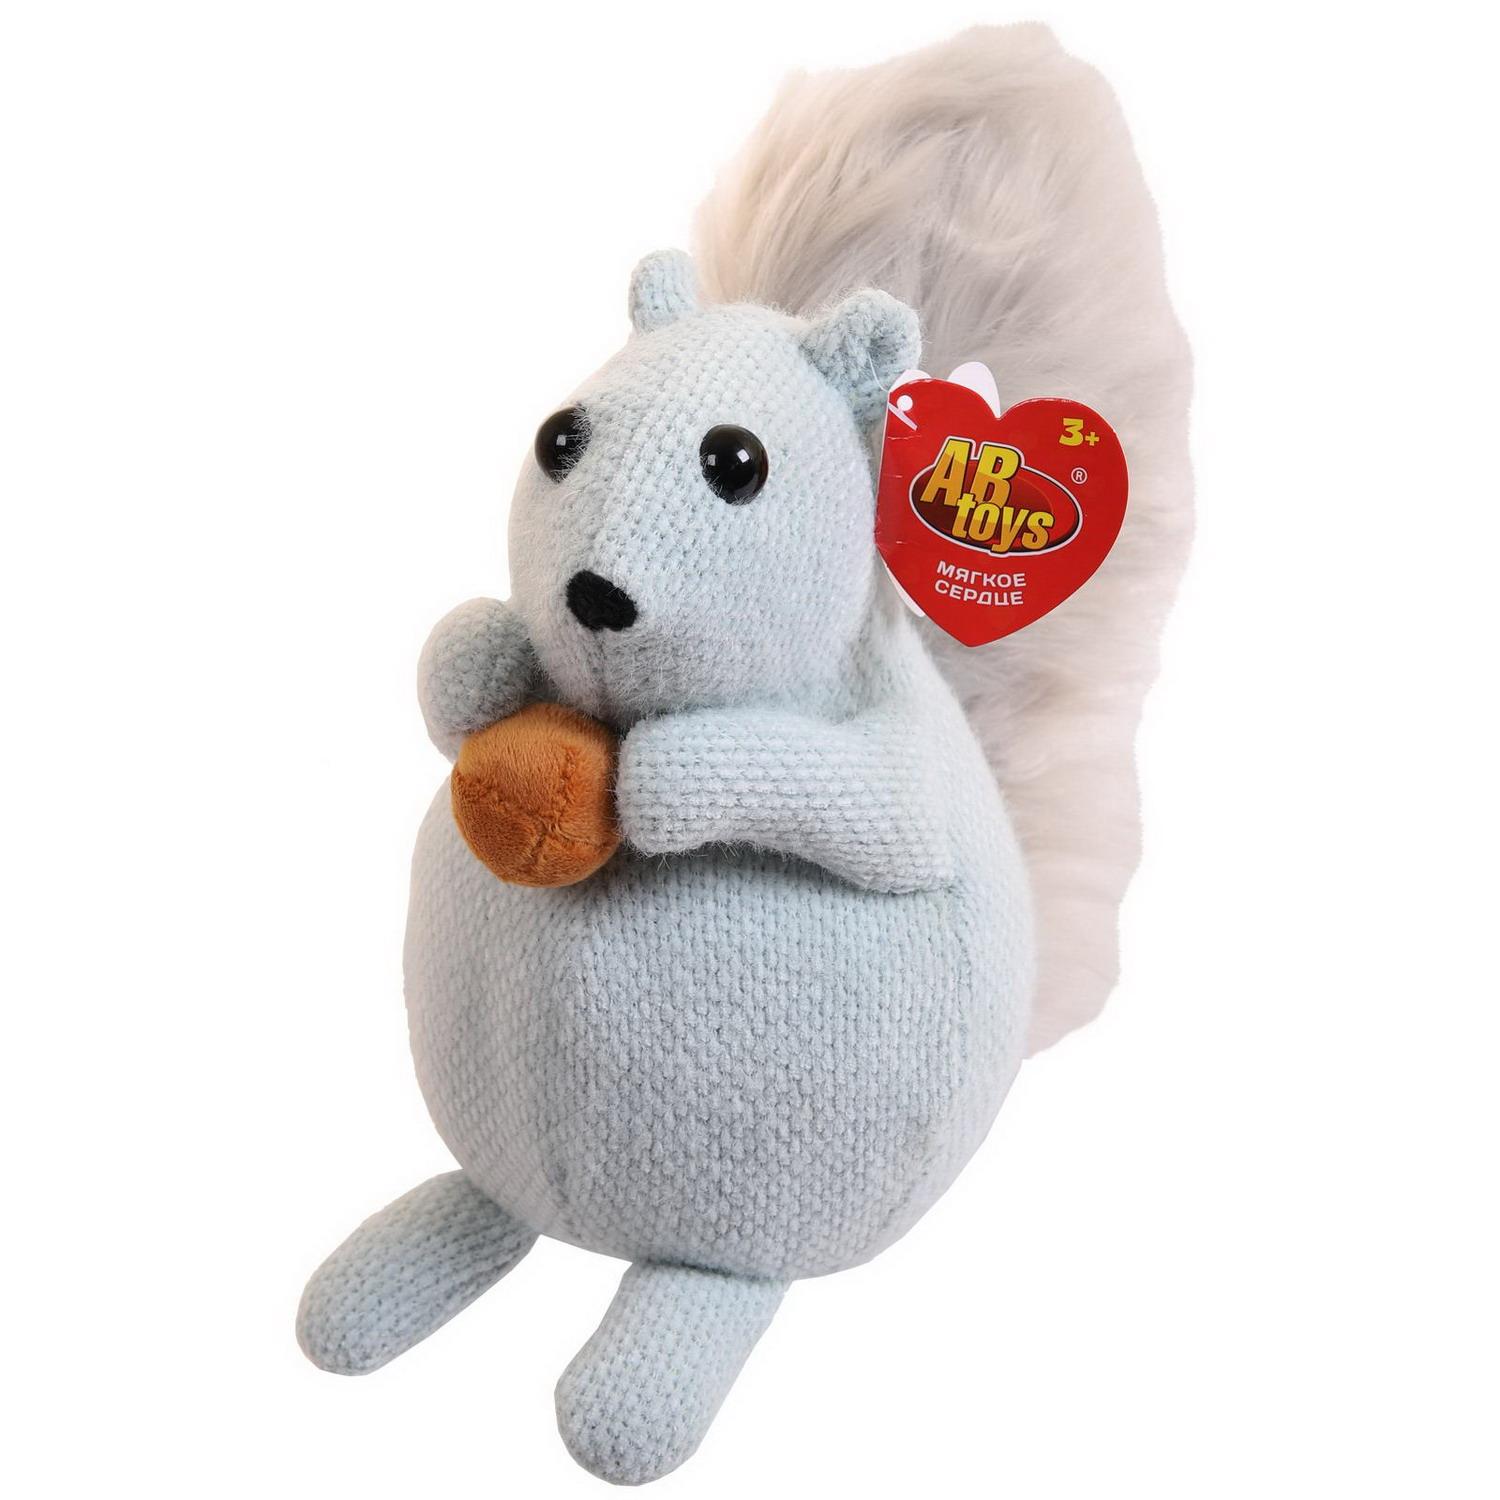 Мягкая игрушка Abtoys Knitted. Белка вязаная с пушистым хвостом серо-голубая, 32см мягкая игрушка abtoys knitted коала вязаная 21 см